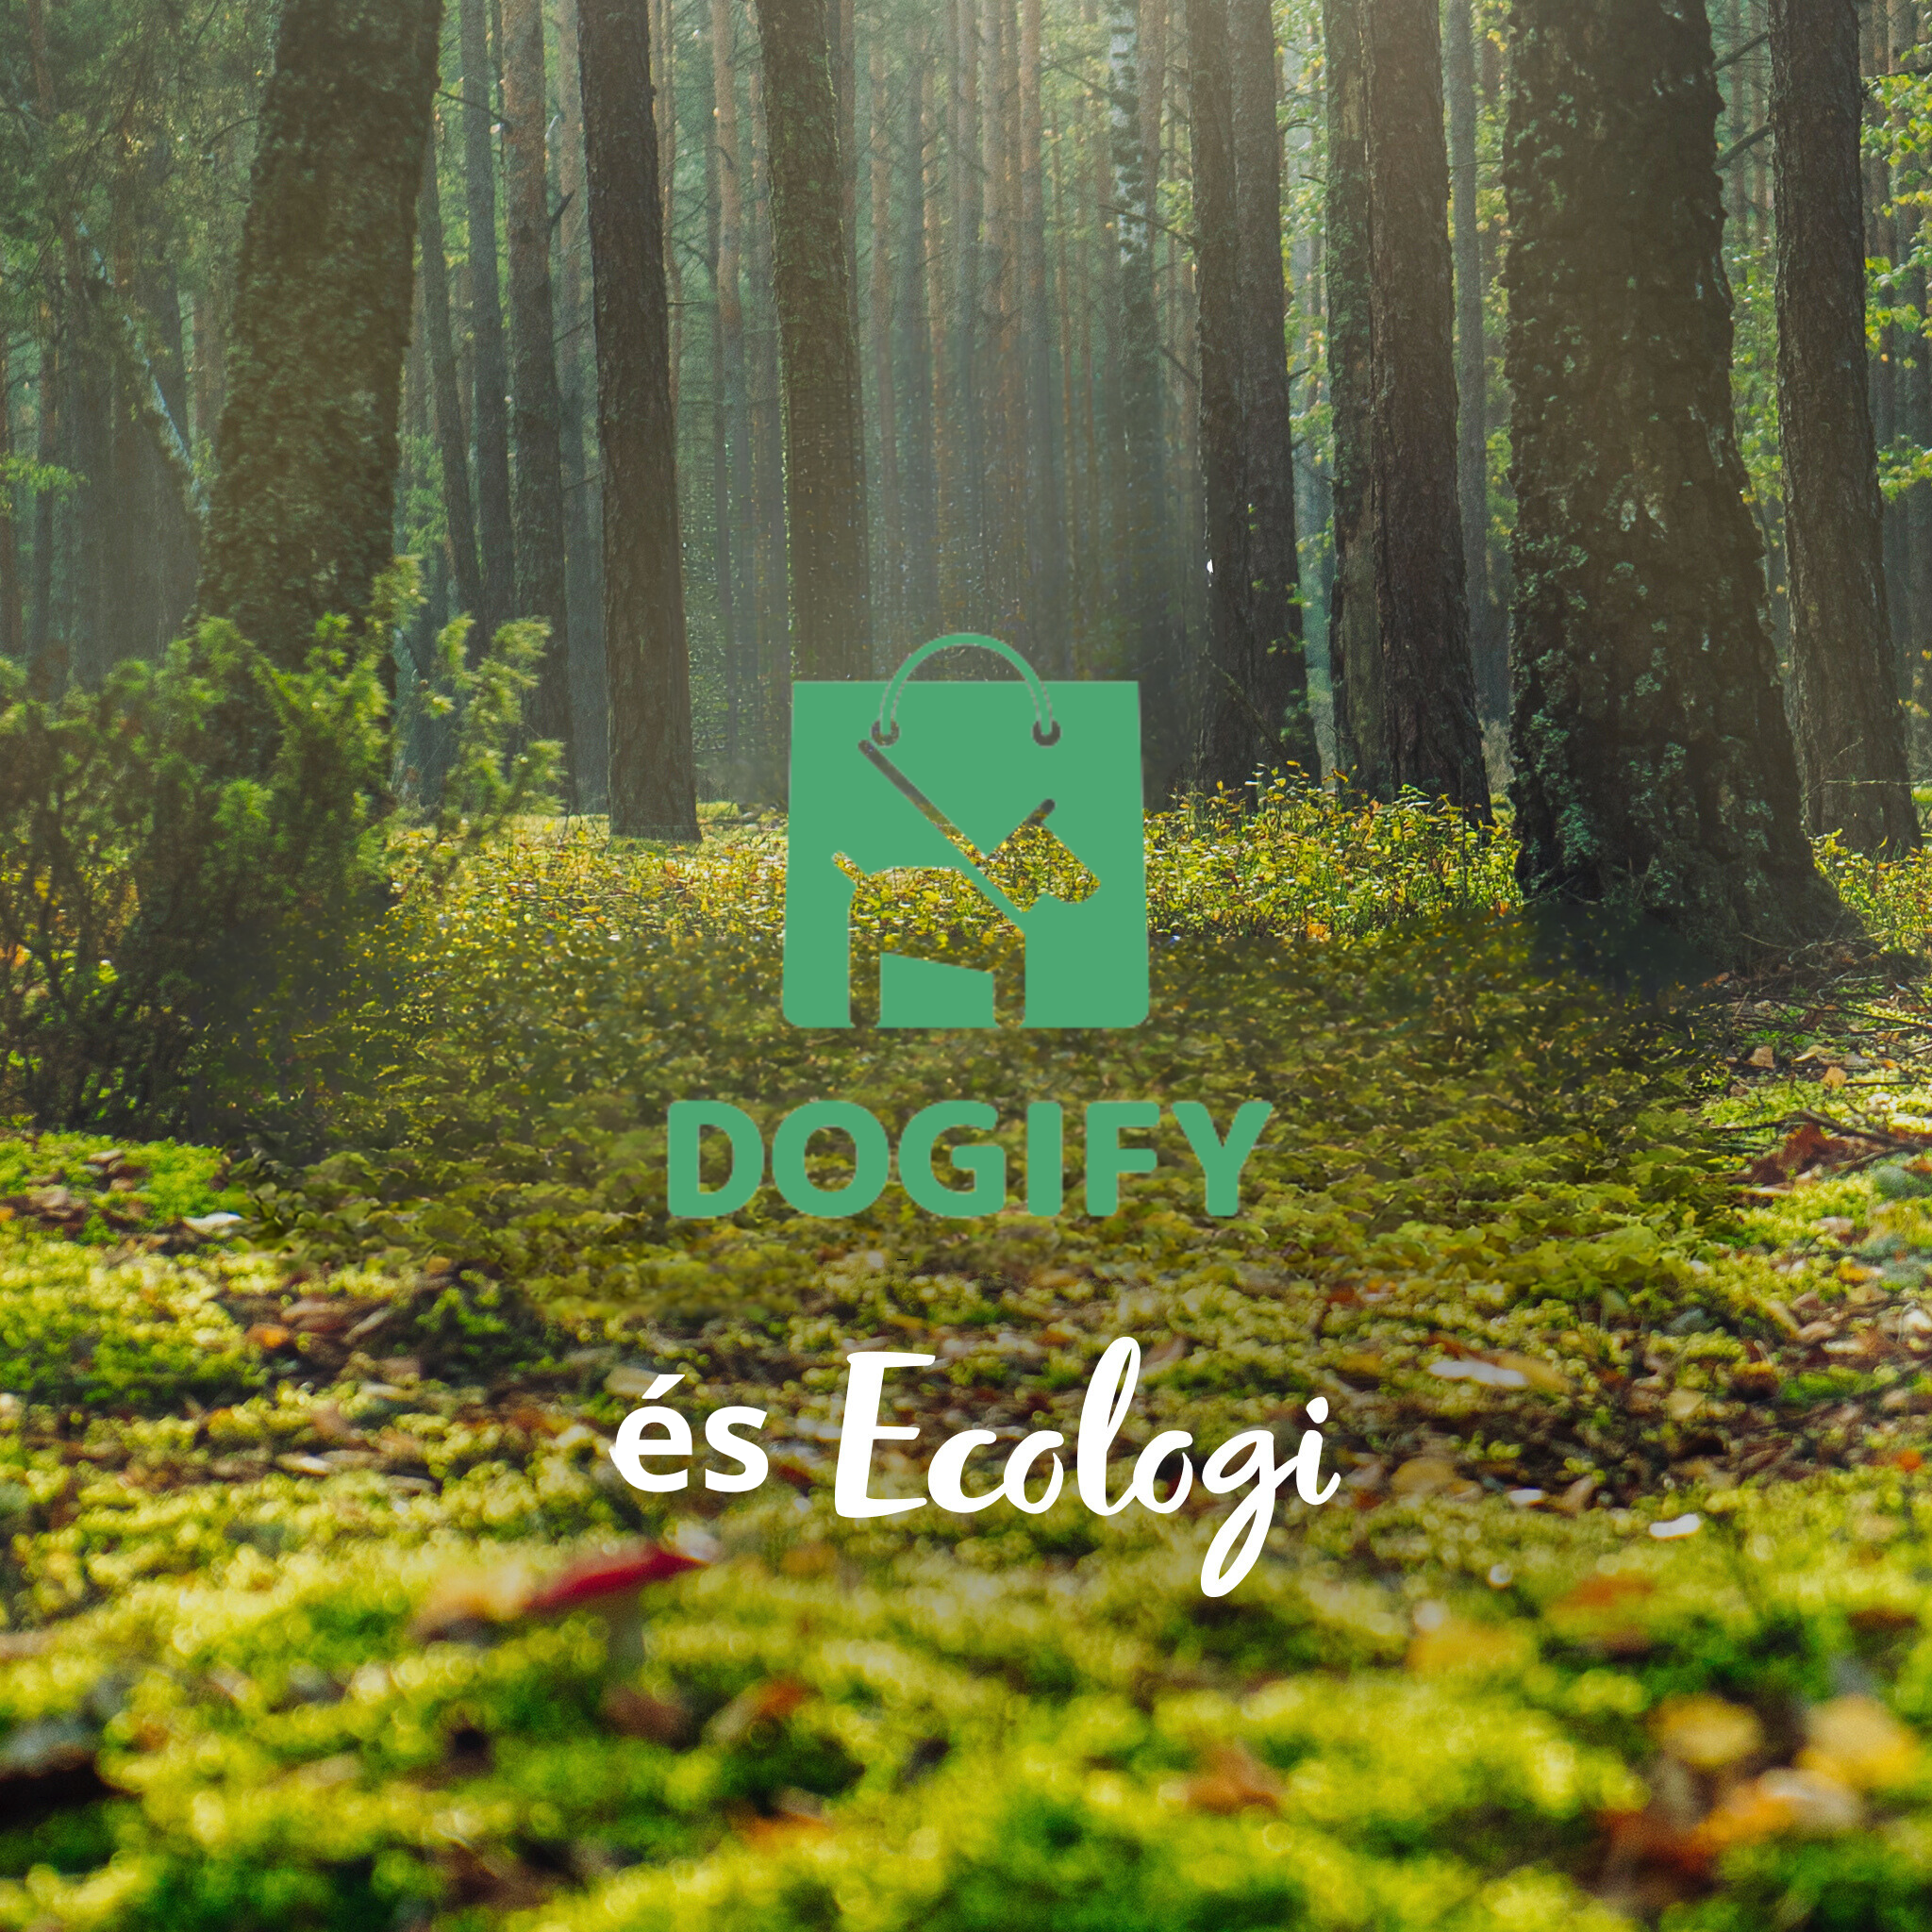 A Dogify termékek vásárlása egy fát ültet! Az Ecologi-val közösen hozzájárulunk a bolygónk erdős területeinek megőrzéséhez és regenerálásához